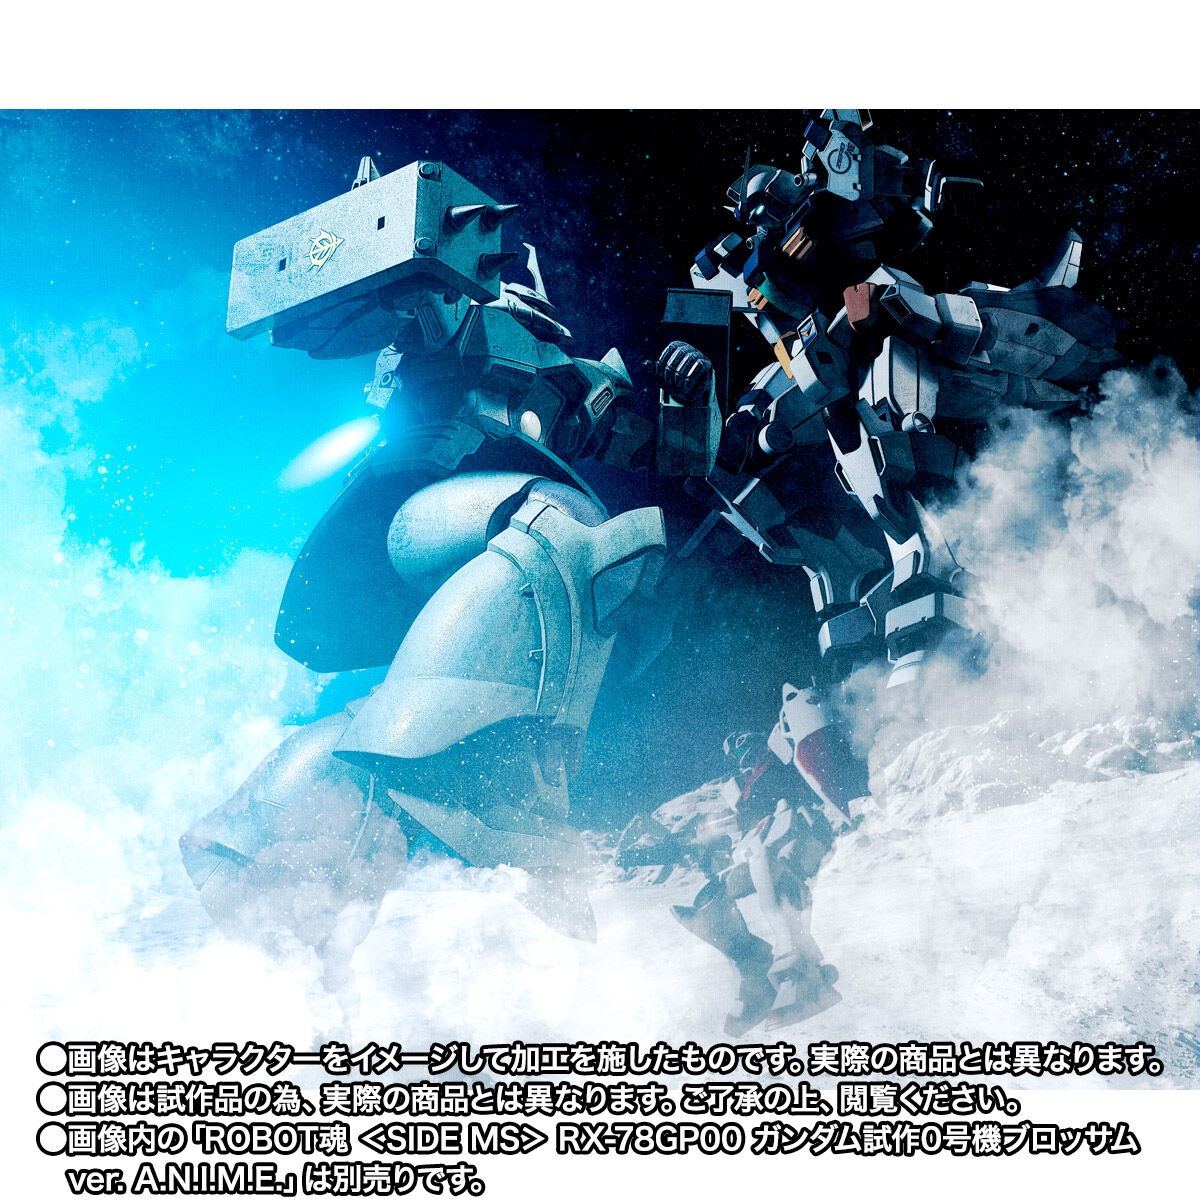 機動戦士ガンダム0083 with ファントム・ブレット「ROBOT魂 ＜SIDE MS＞ MS-14JG ゲルググJ（タグ軍曹機） ver. A.N.I.M.E.」のフィギュア画像